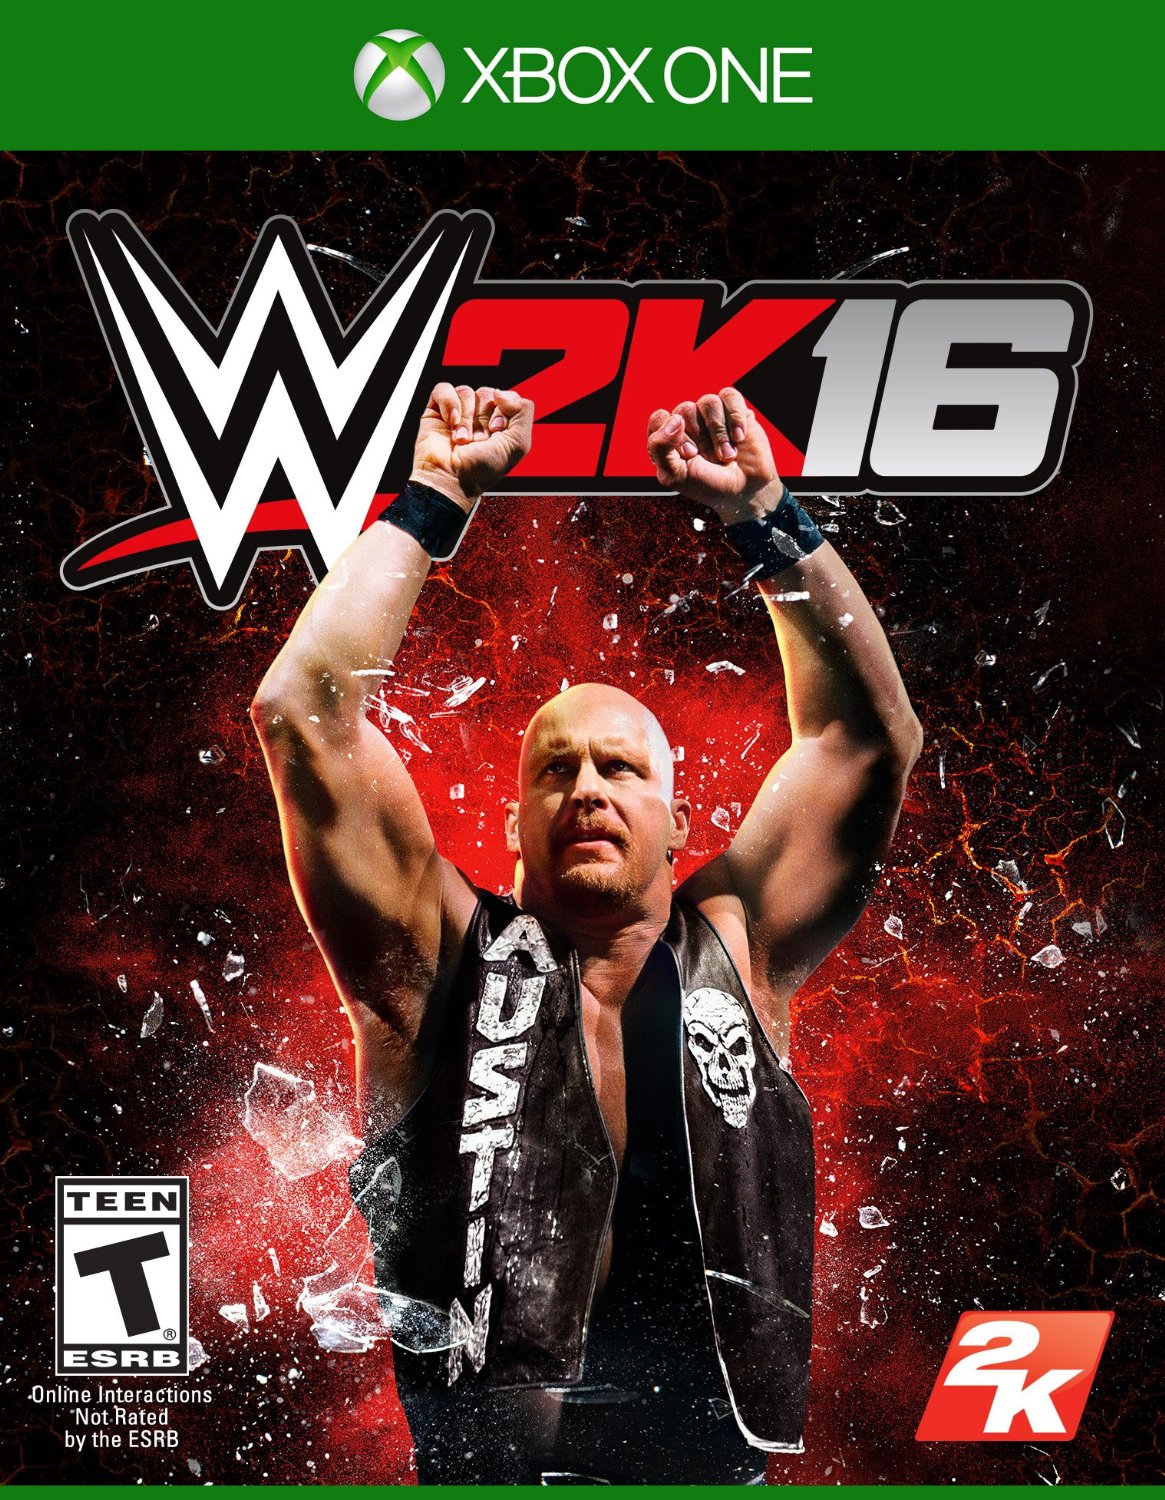 WWE 2K16 (Xbox One)